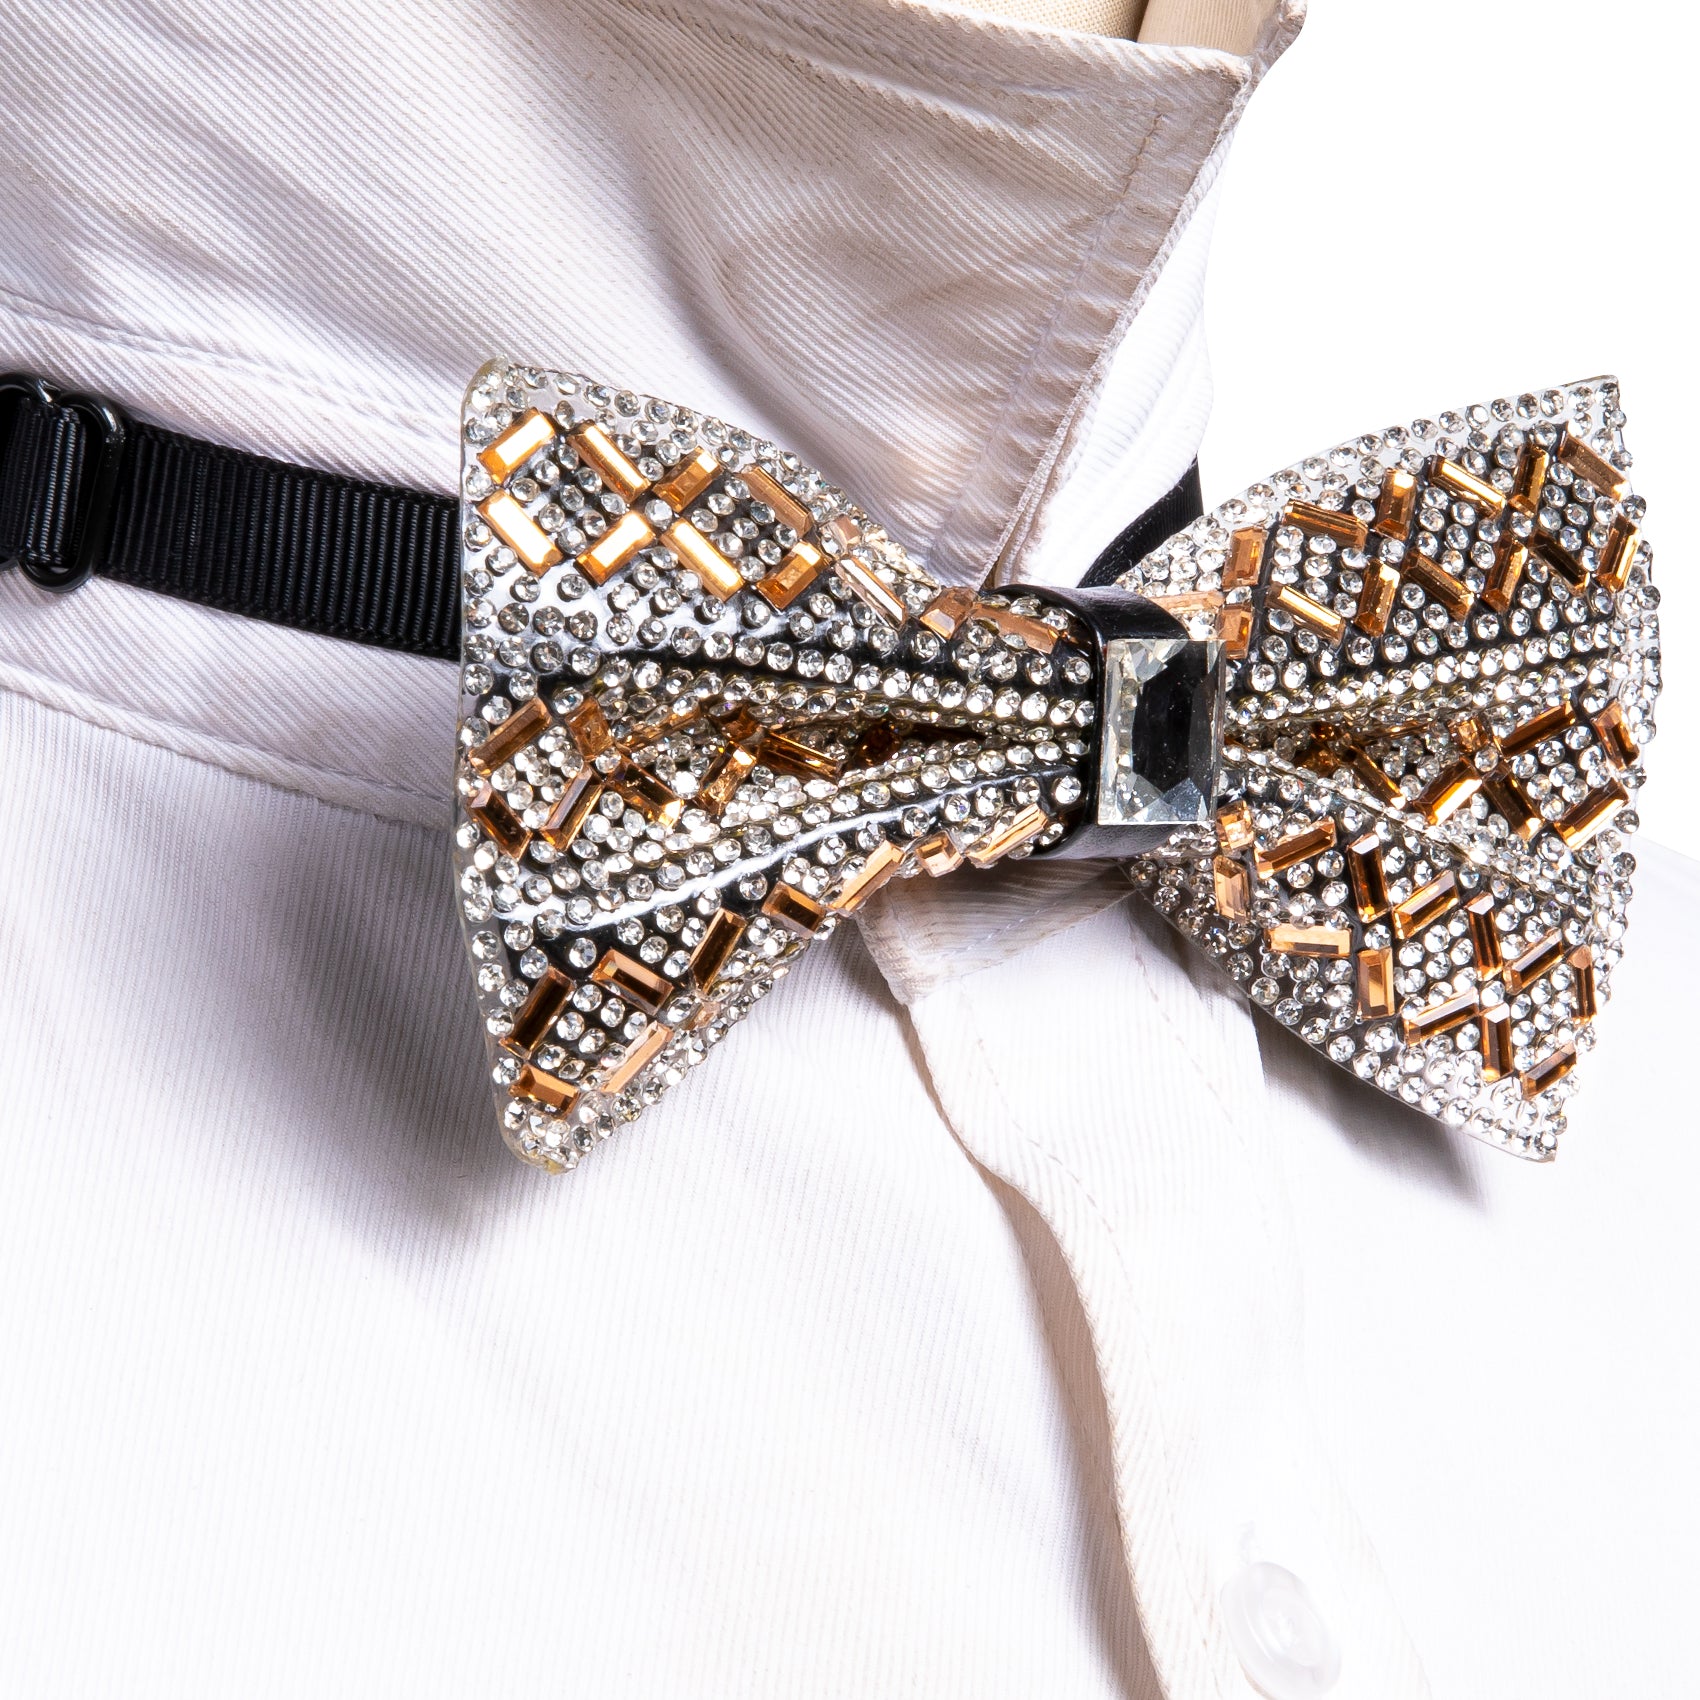 Shining Brown White Plaid Rhinestones Pre-tied Bowties Fashion For Wedding Party